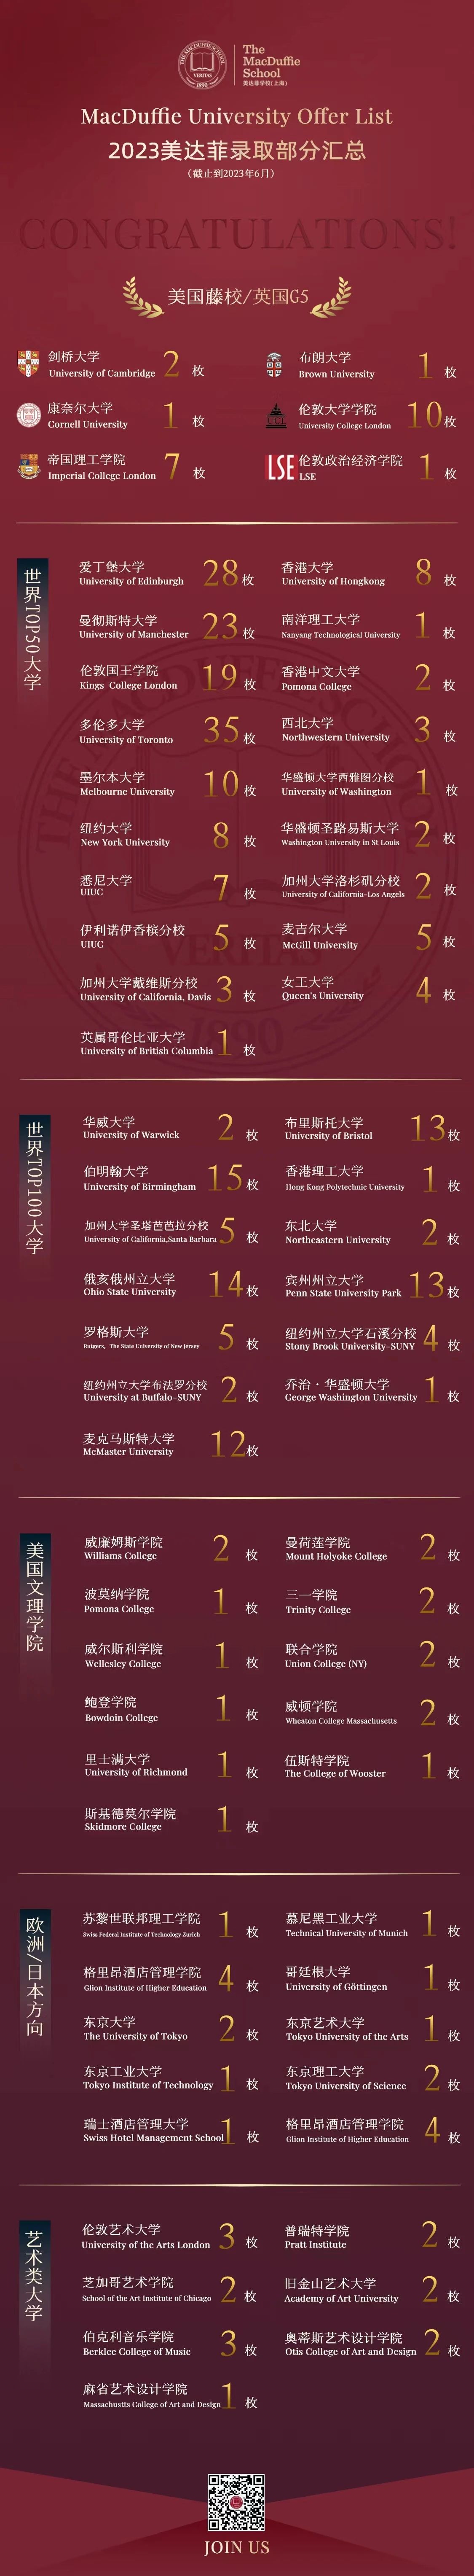 1 上海美达菲双语高级中学招生及学费情况10.jpg